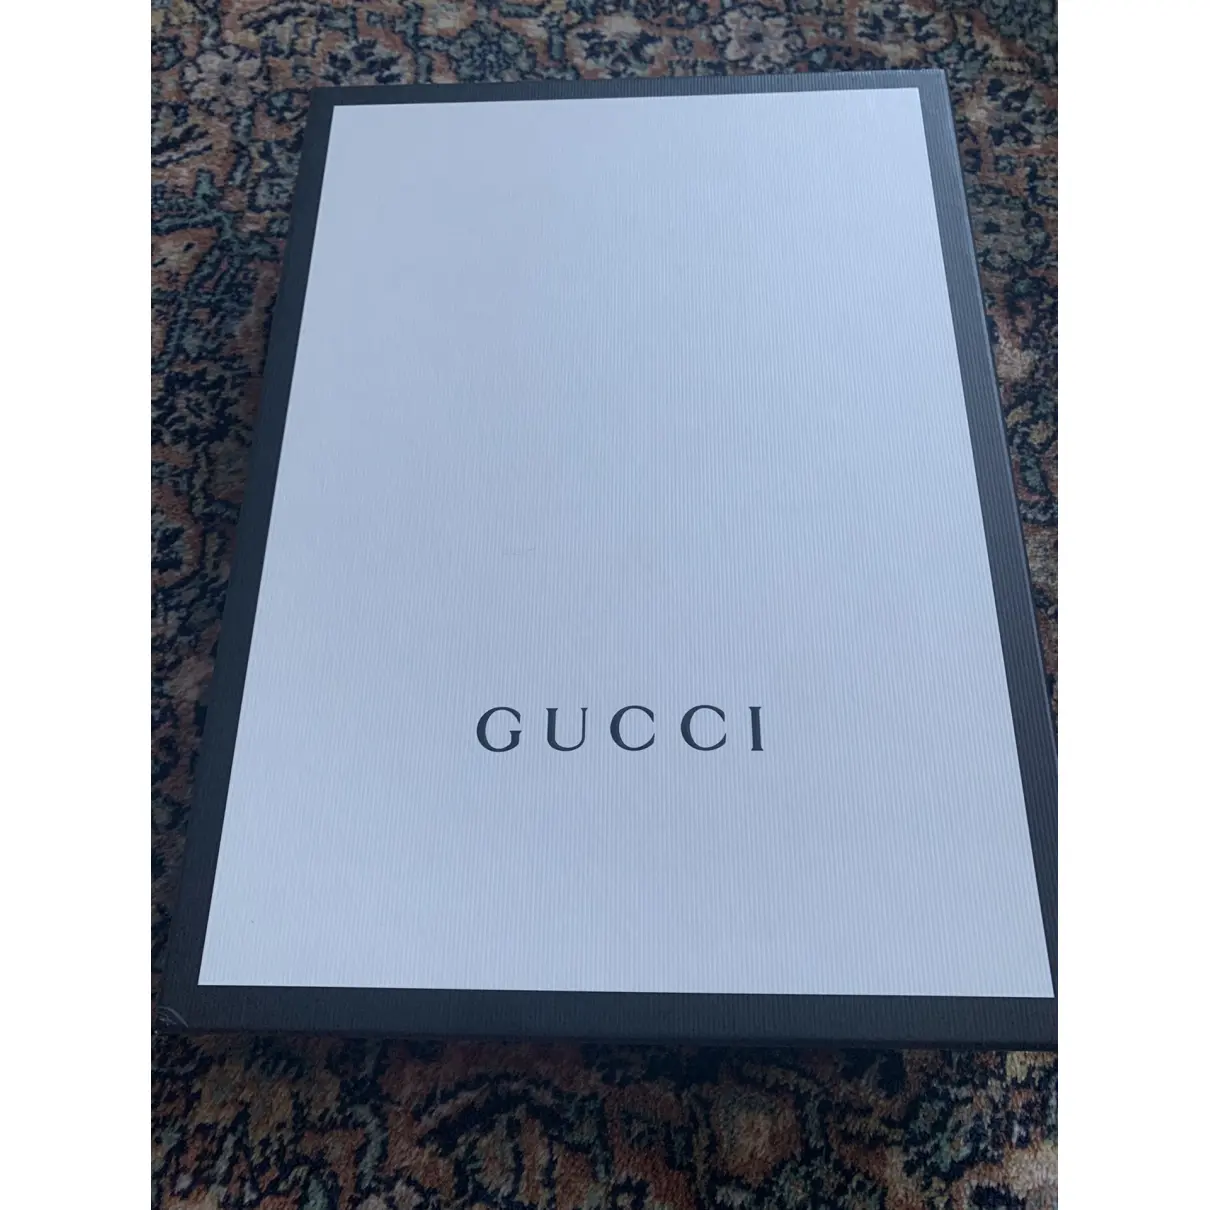 Buy Gucci Leggings online